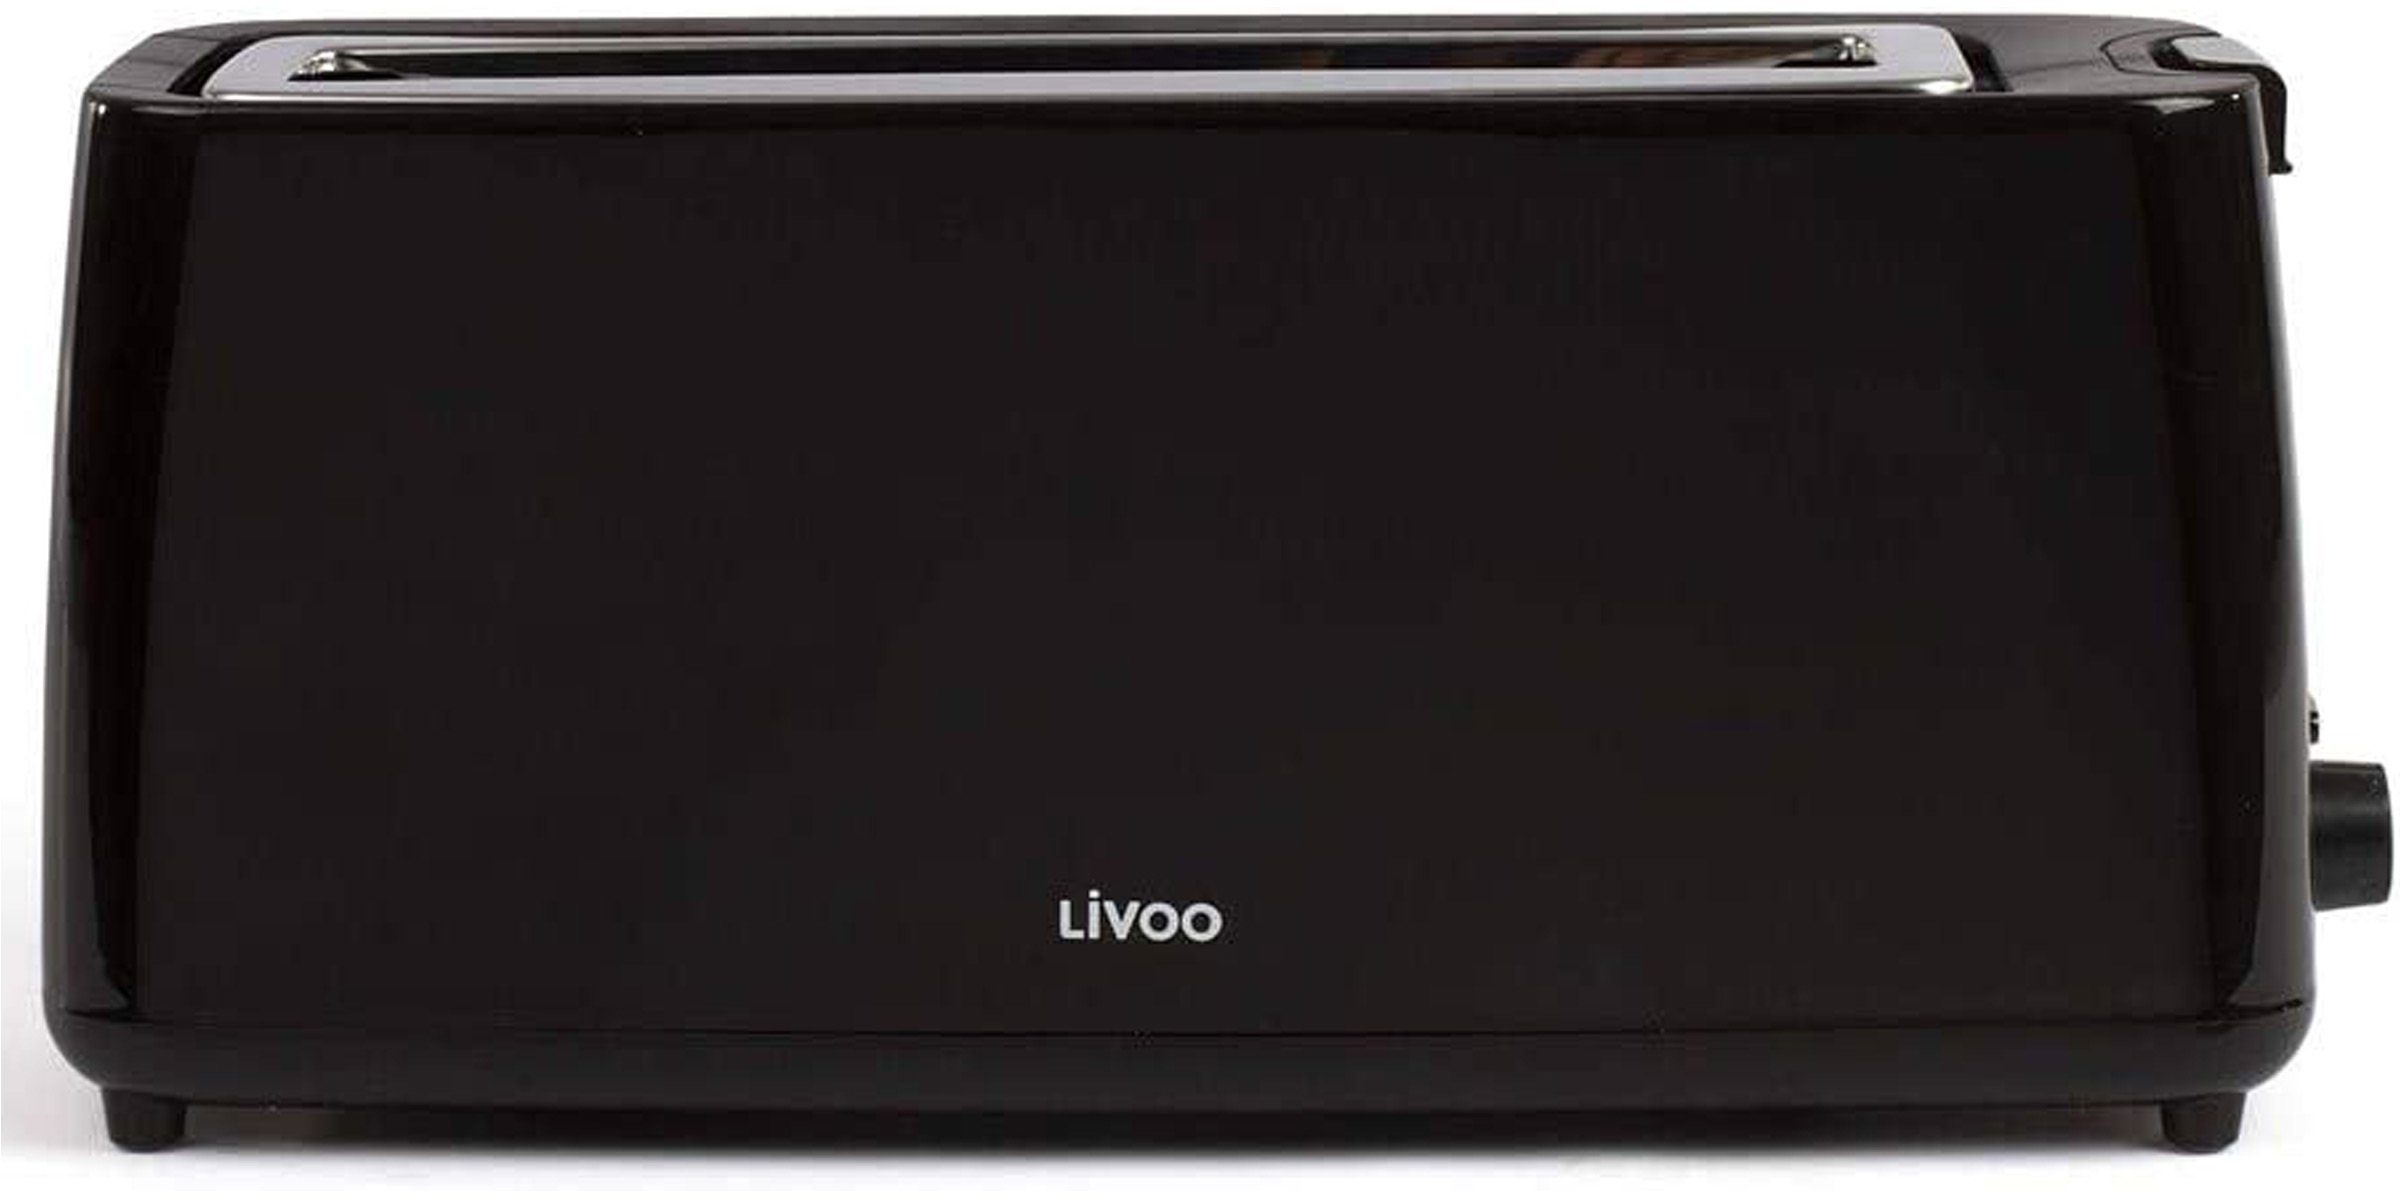 LIVOO Langschlitz-Toaster schwarz, DOD168N 900 W Toaster